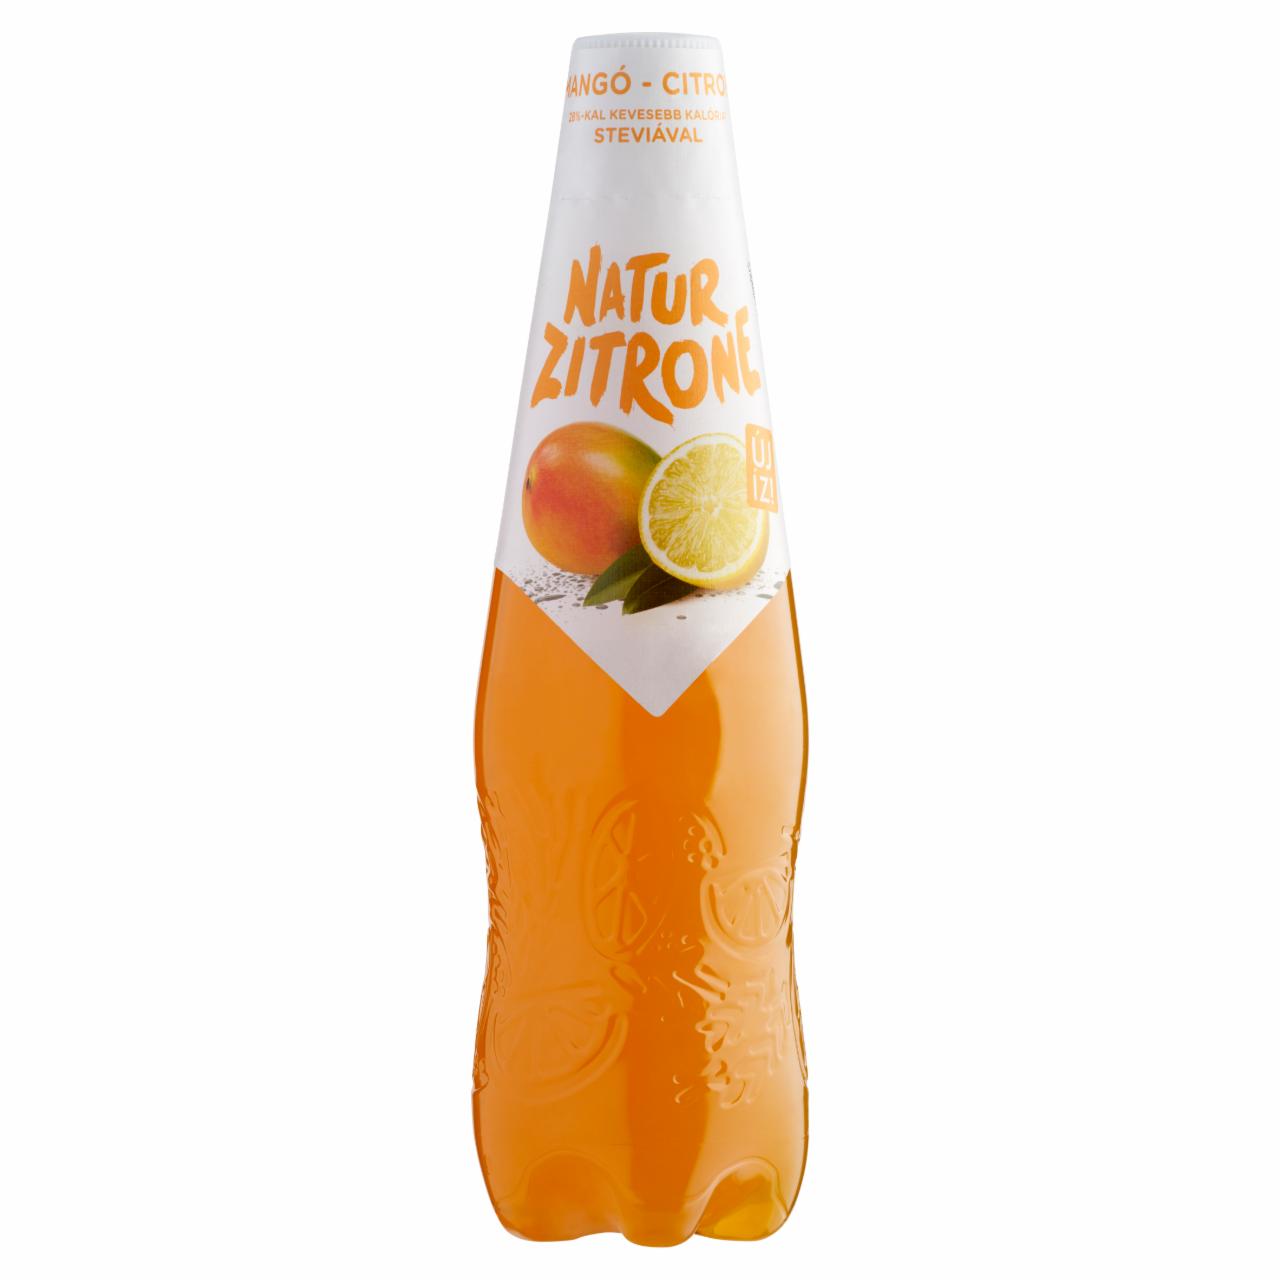 Képek - Natur Zitrone alkoholmentes, mangó-citrom ízű szénsavas ital 0,5 l PET palack